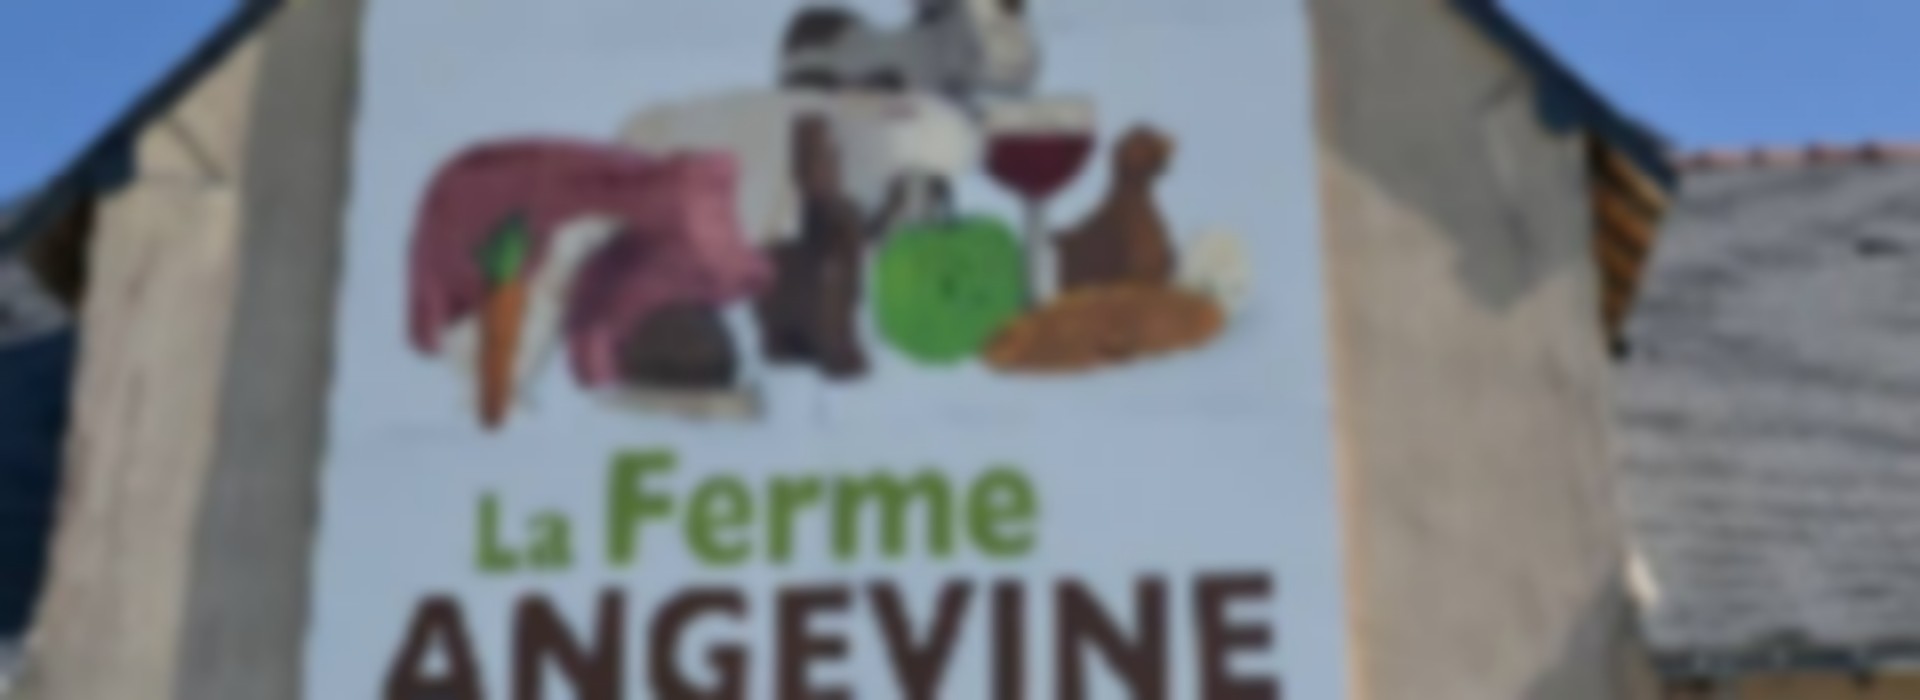 MARCHE BEAUCOUZE - LA FERME ANGEVINE